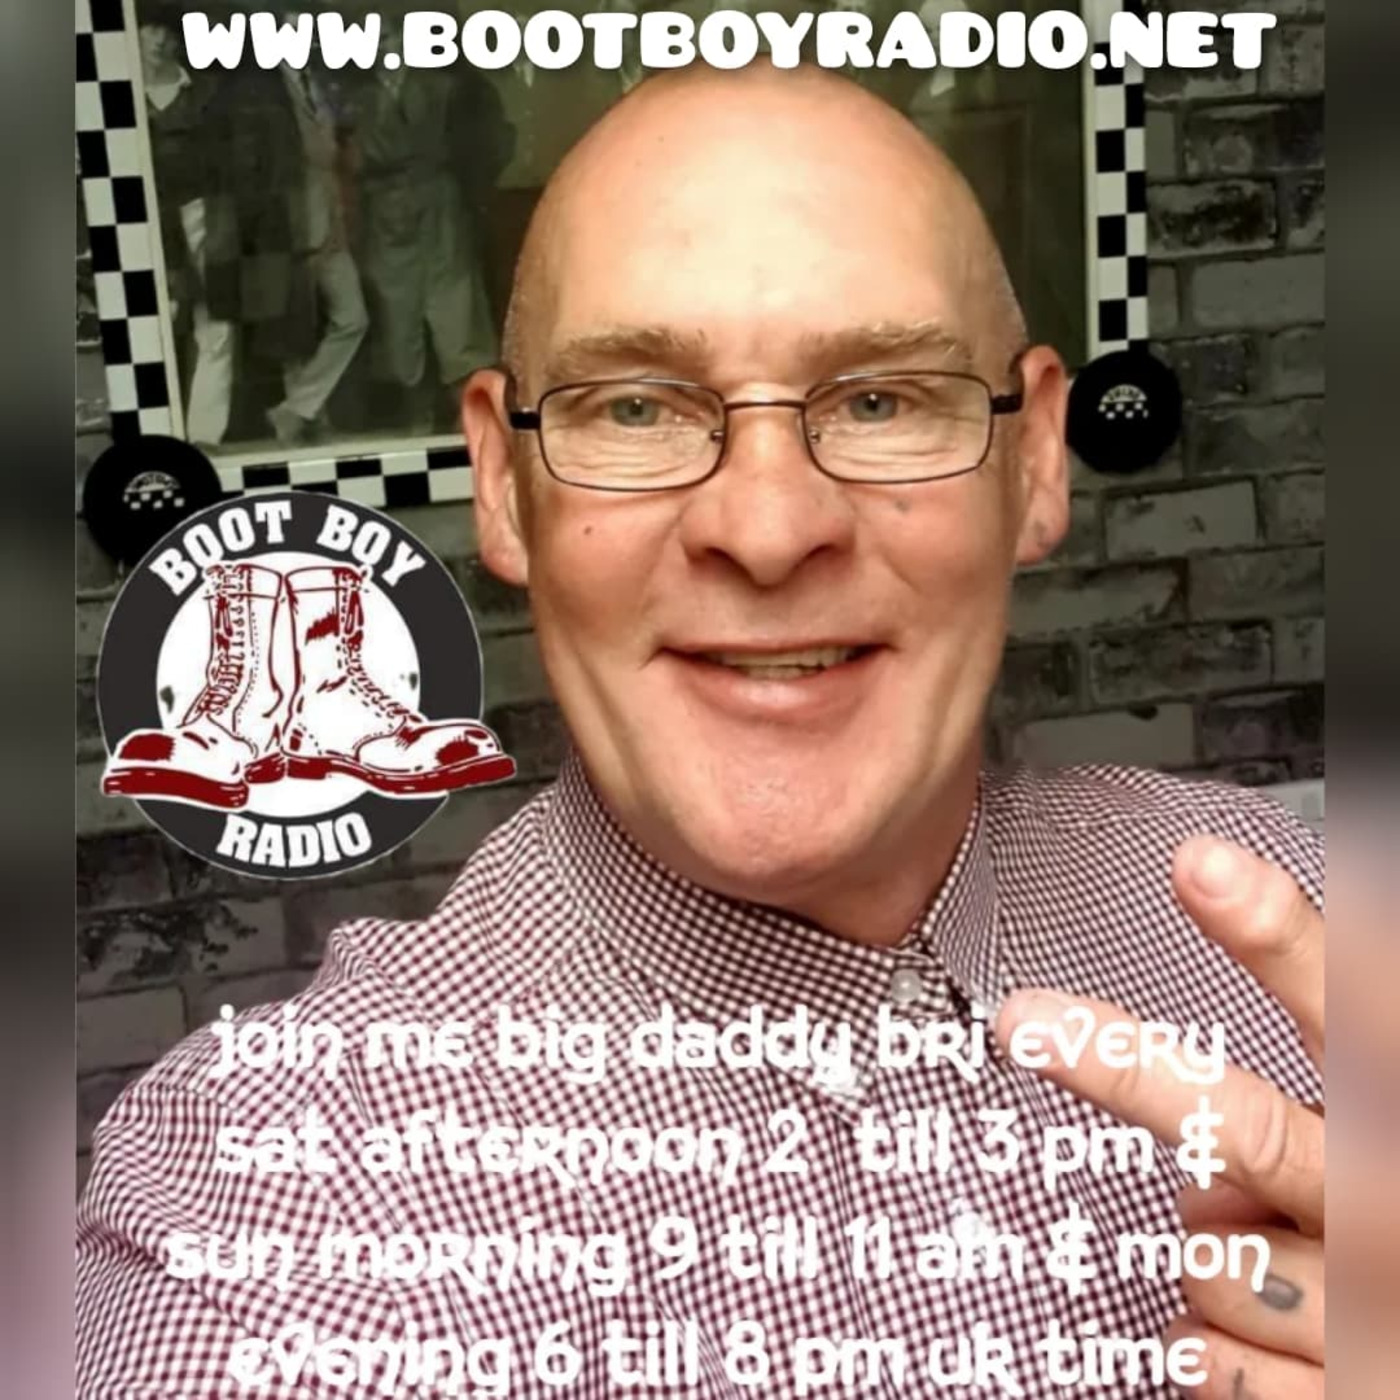 Episode 2530: Big Daddy Bri 15th August 2022 On bootboyradio.net